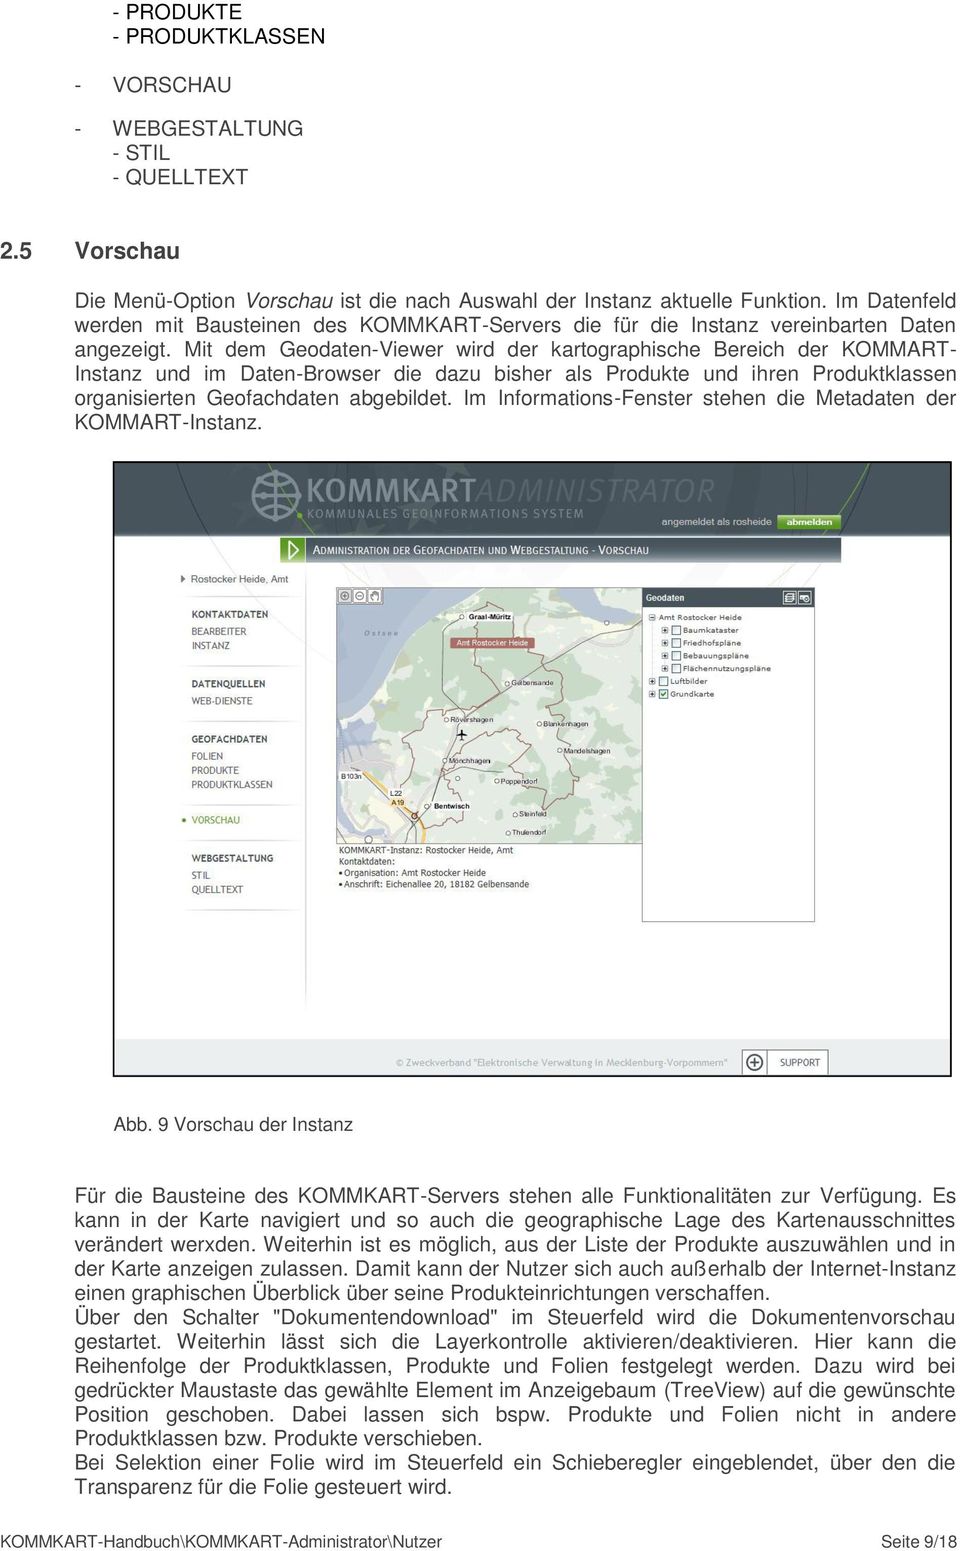 Mit dem Geodaten-Viewer wird der kartographische Bereich der KOMMART- Instanz und im Daten-Browser die dazu bisher als Produkte und ihren Produktklassen organisierten Geofachdaten abgebildet.